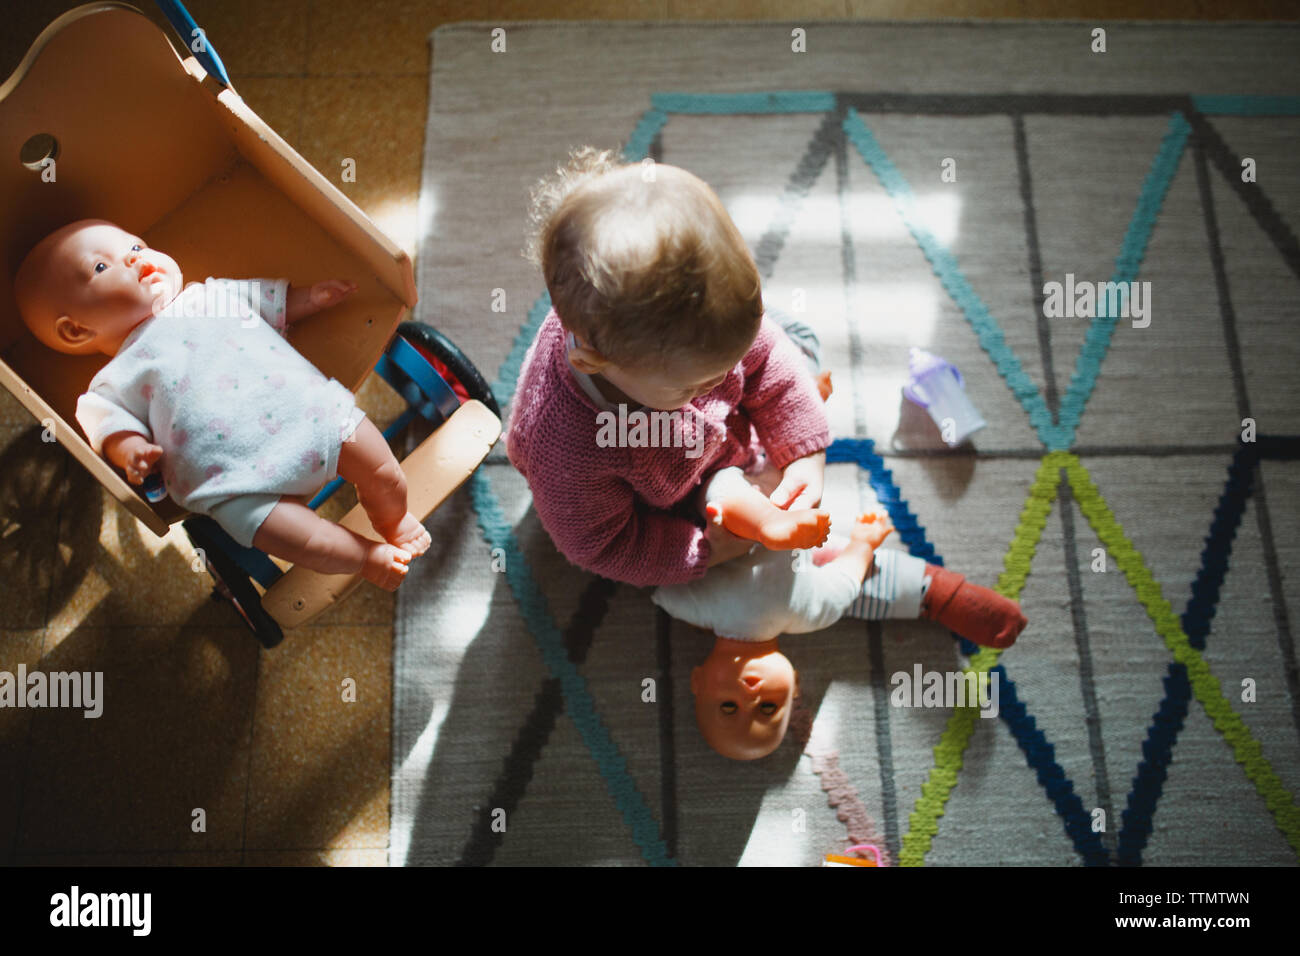 Una niña sentada sobre una alfombra de jugar con sus muñecas Foto de stock